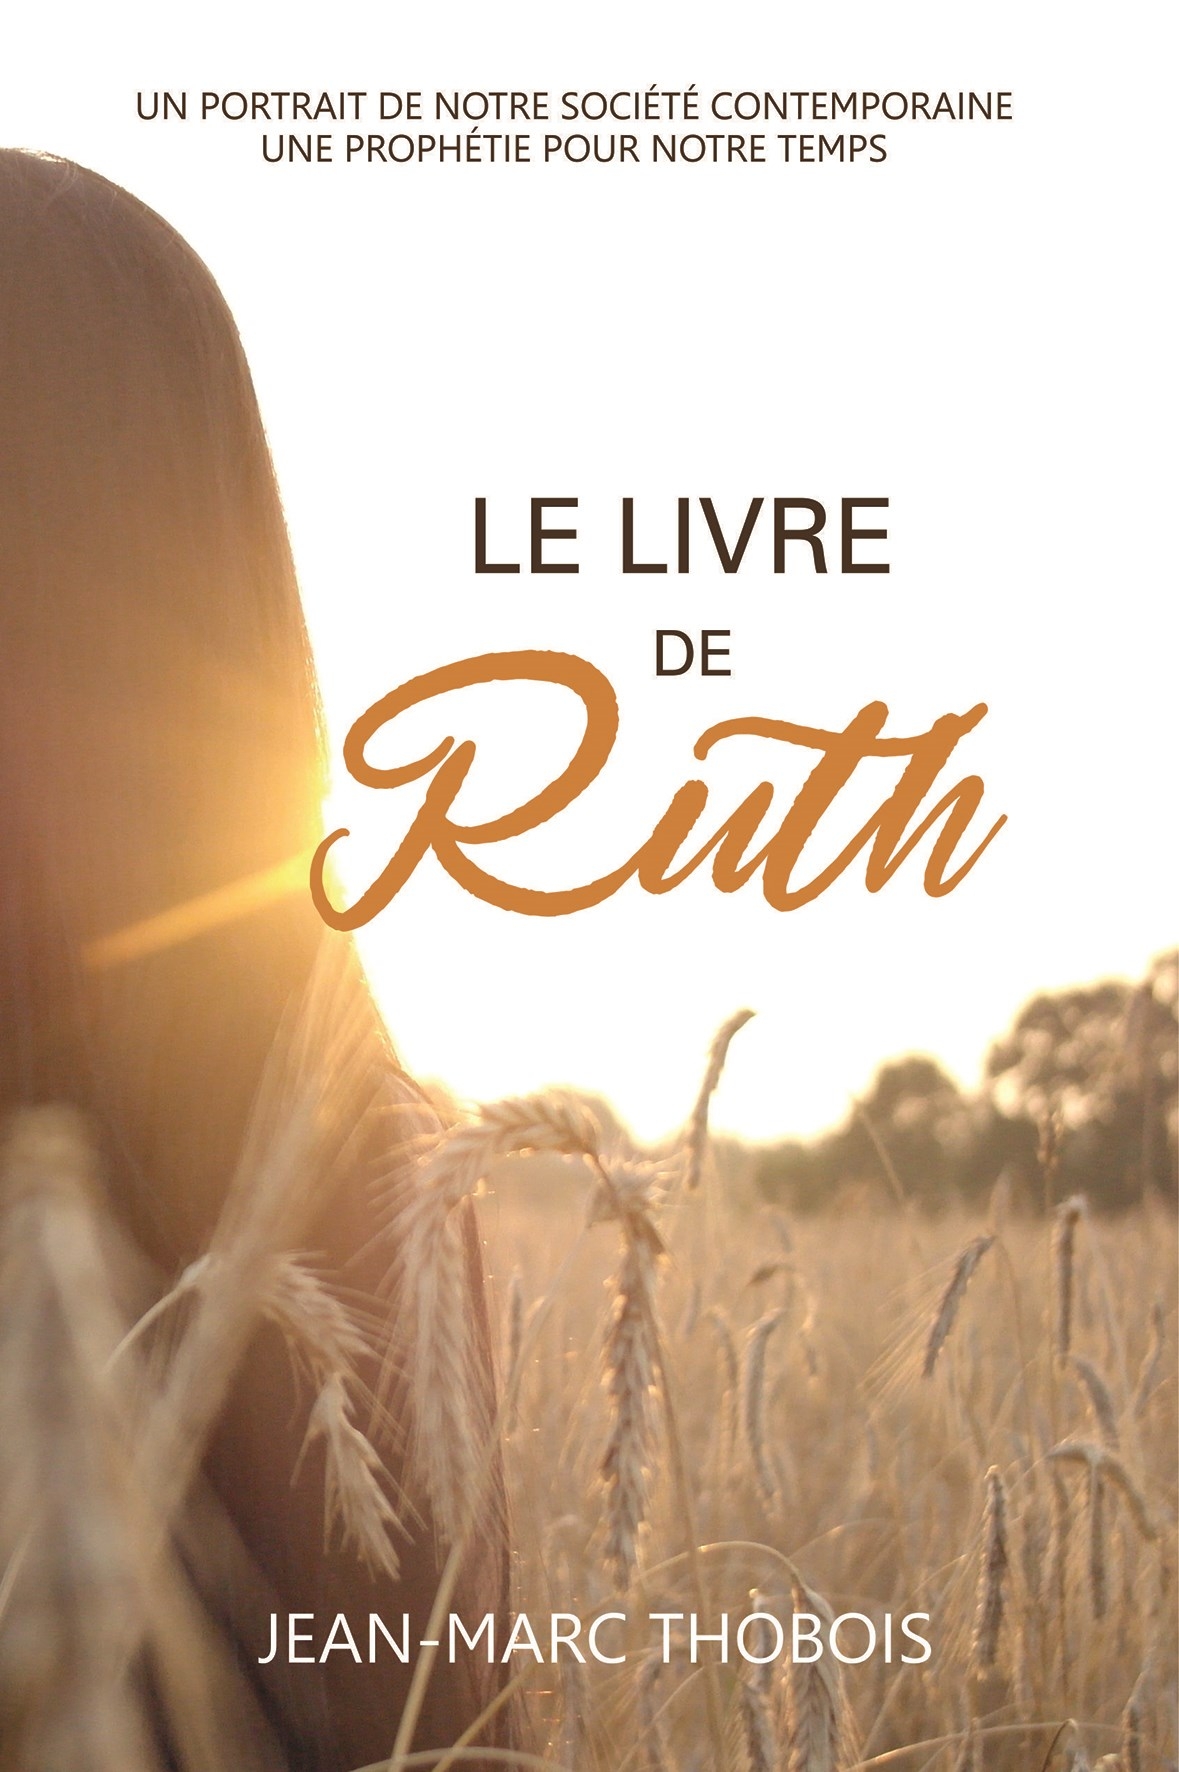 Le livre de Ruth